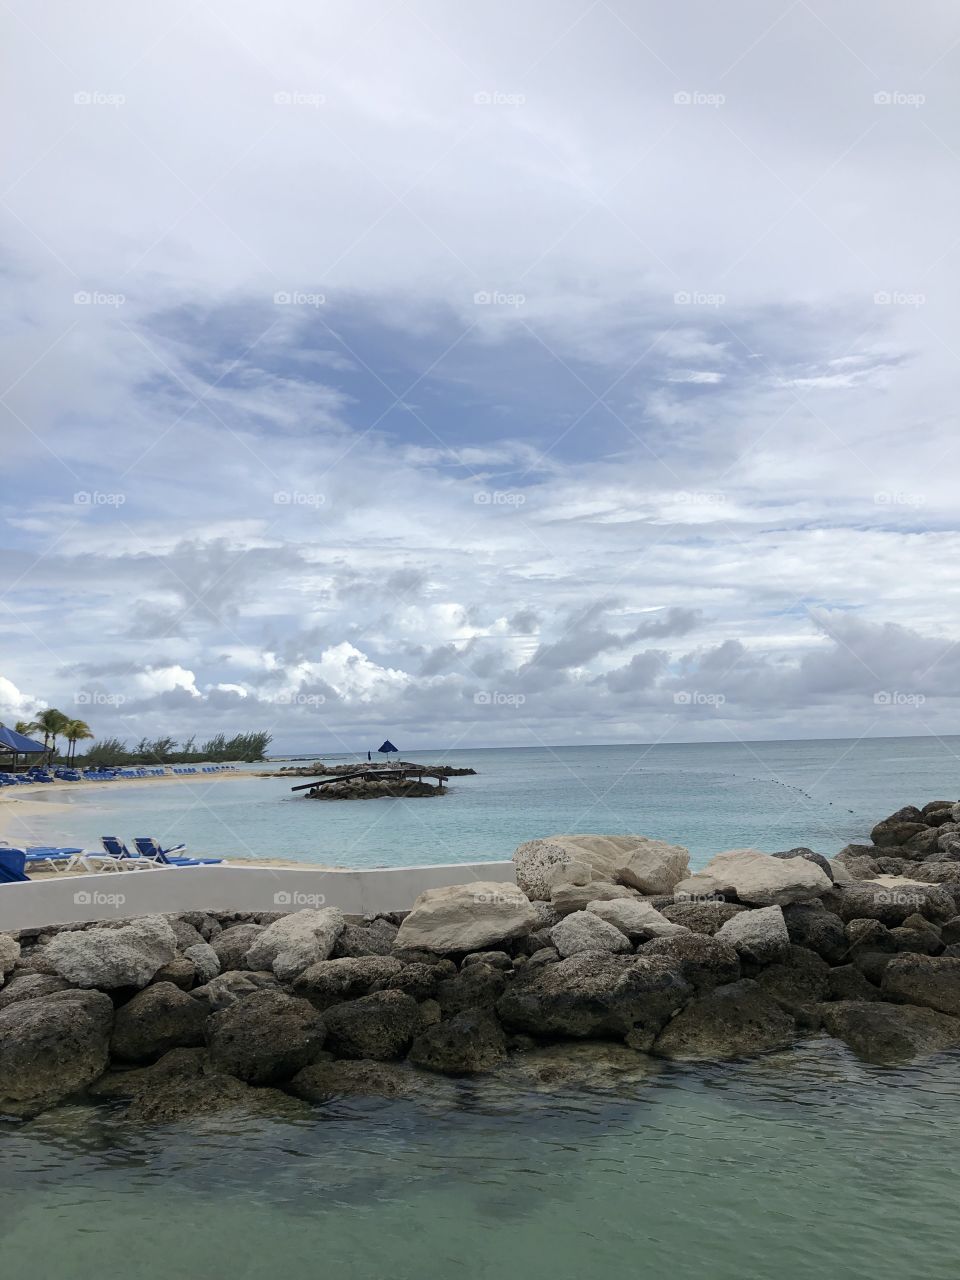 Bahama 